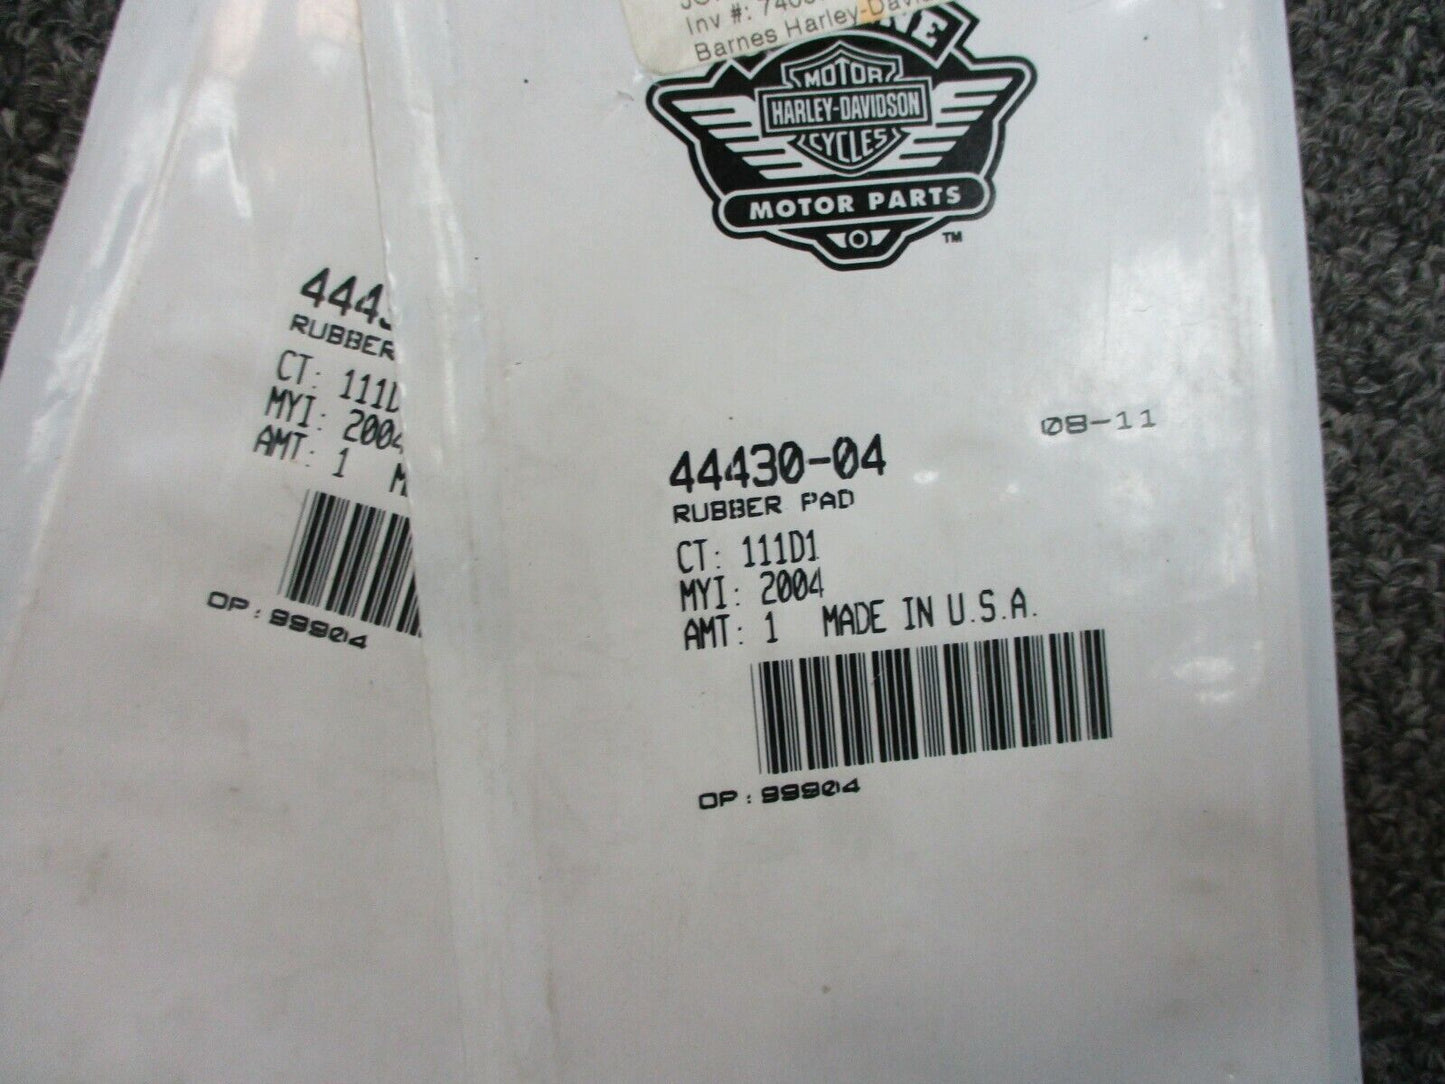 Harley Davidson OEM Rubber Pads for Passenger Floor Board Support 44430-04